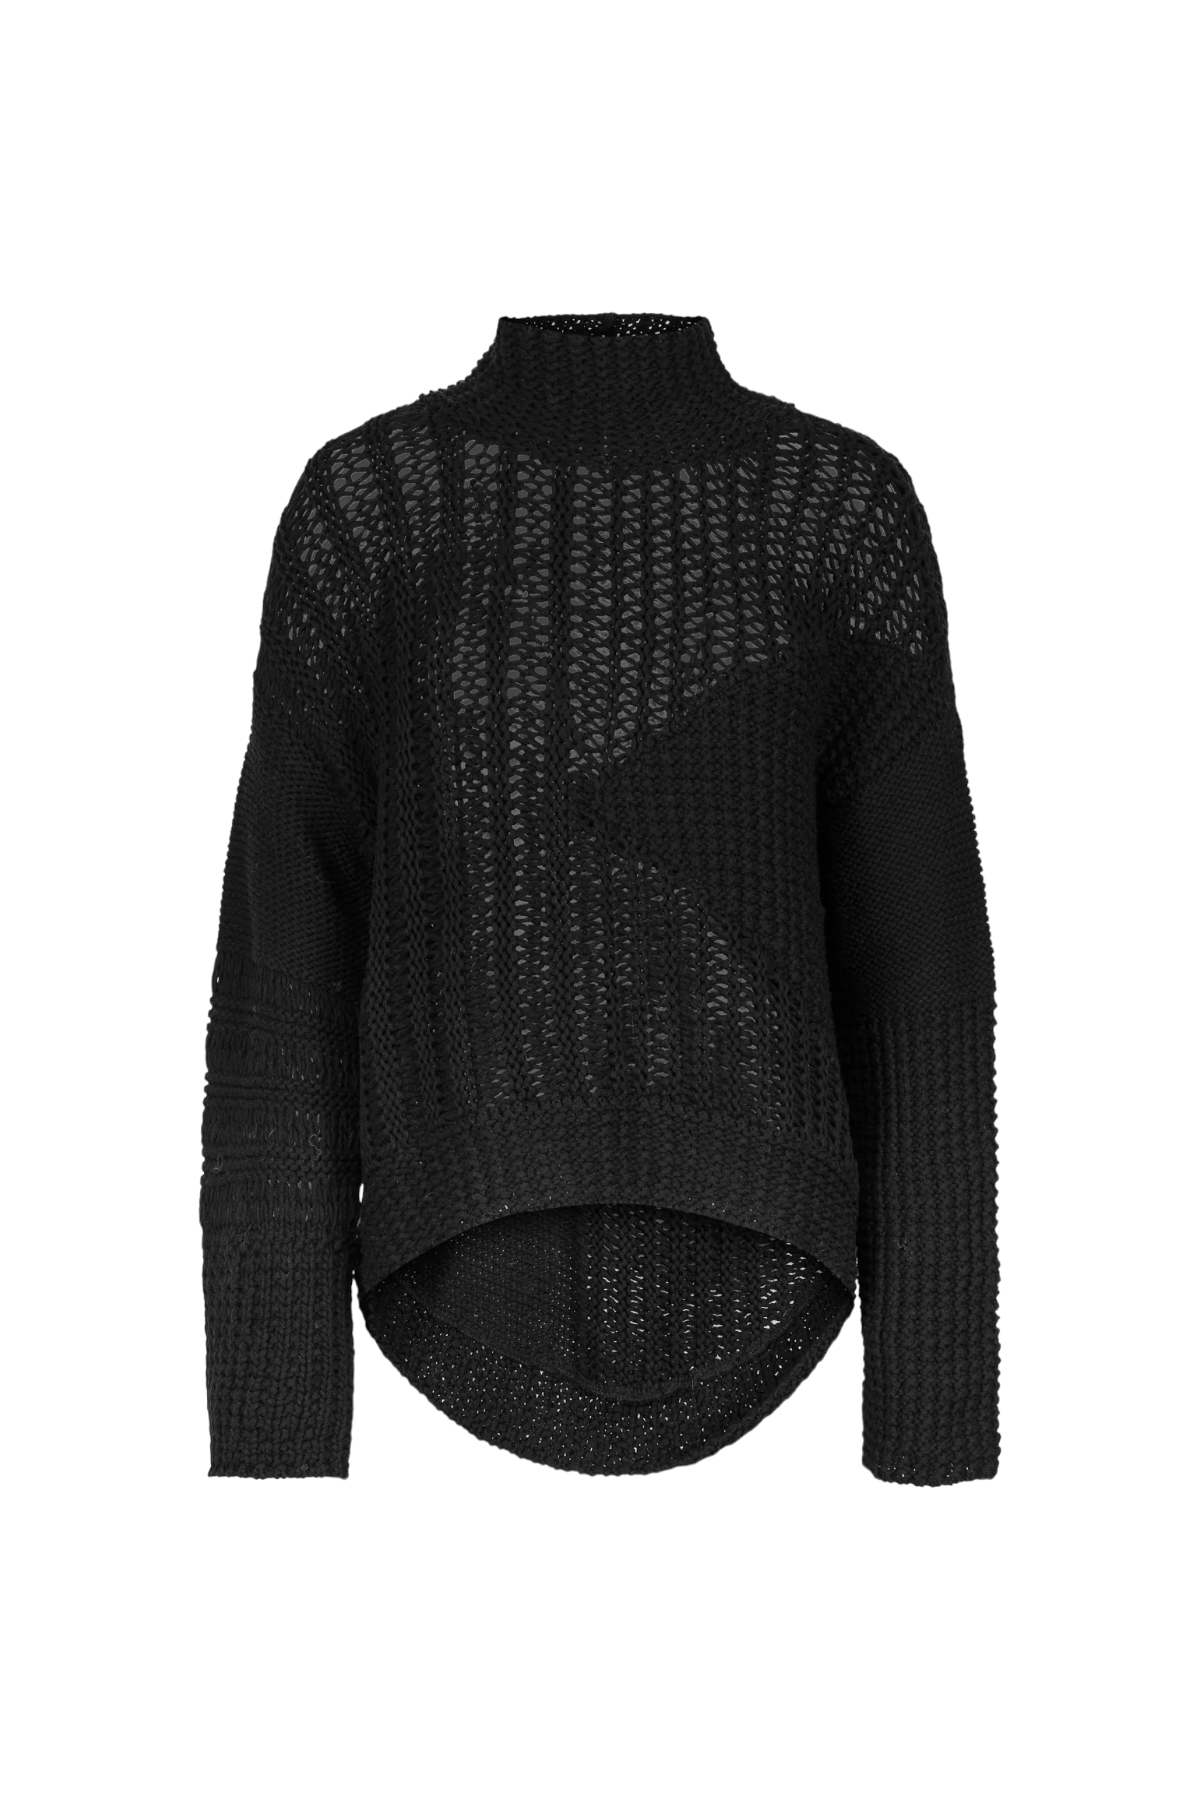 Pullover Deconstructed knit ENVELOPE 1976, Pullover, black, Envelope 1976,